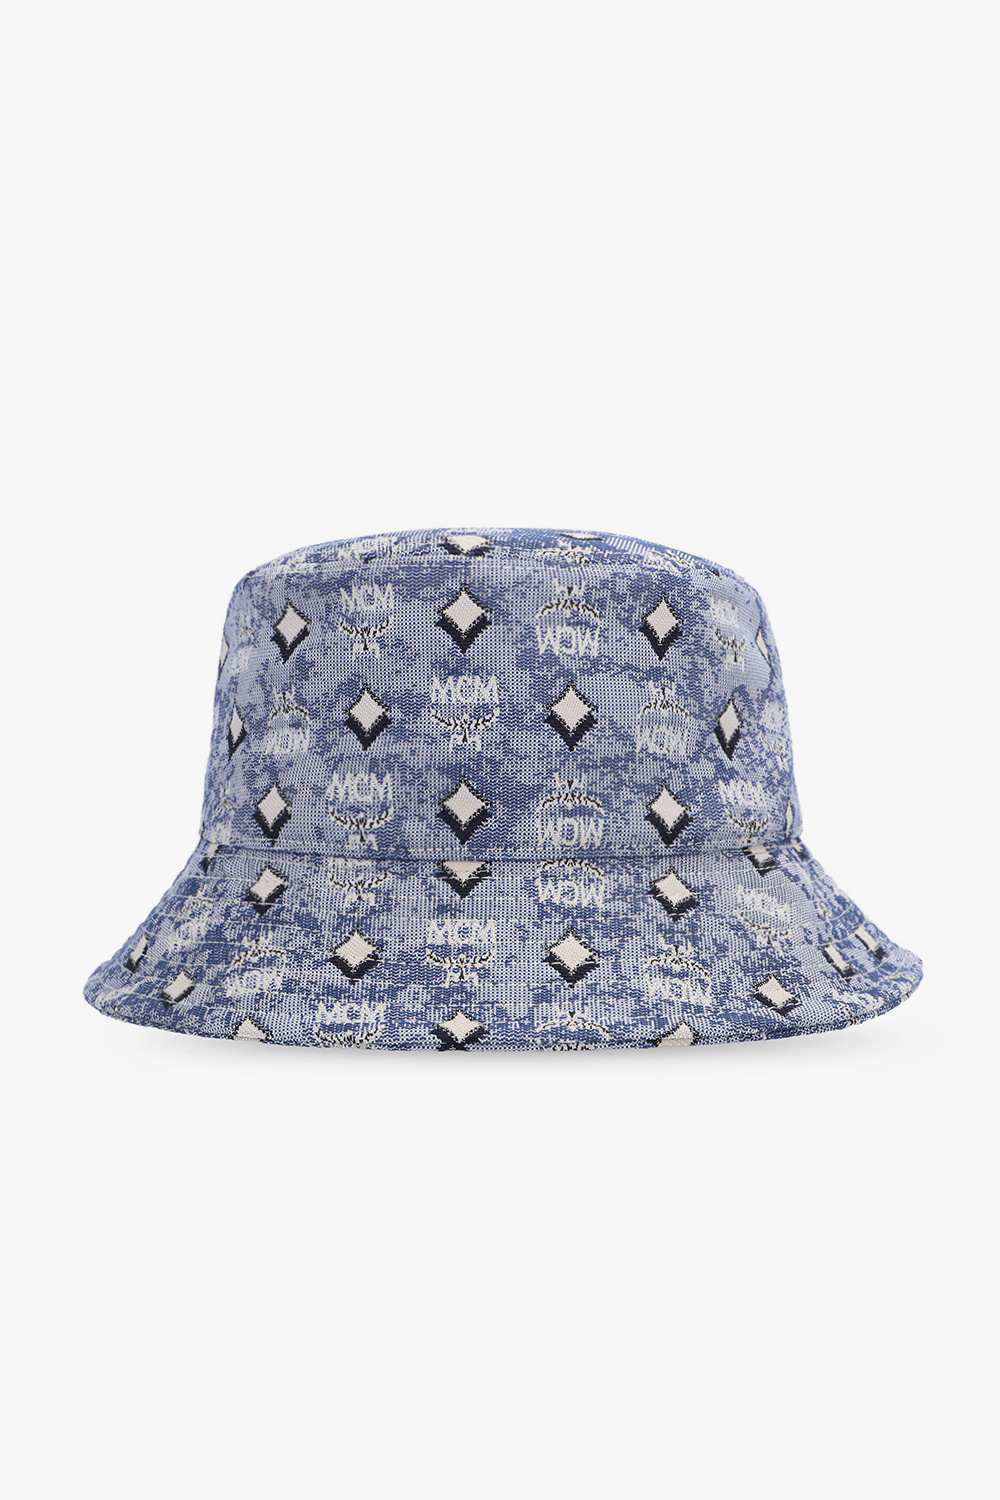 IetpShops Seattle Defender Hat hat - Australia Patterned Fit Flex bucket Kraken MCM Blue Fanatics -